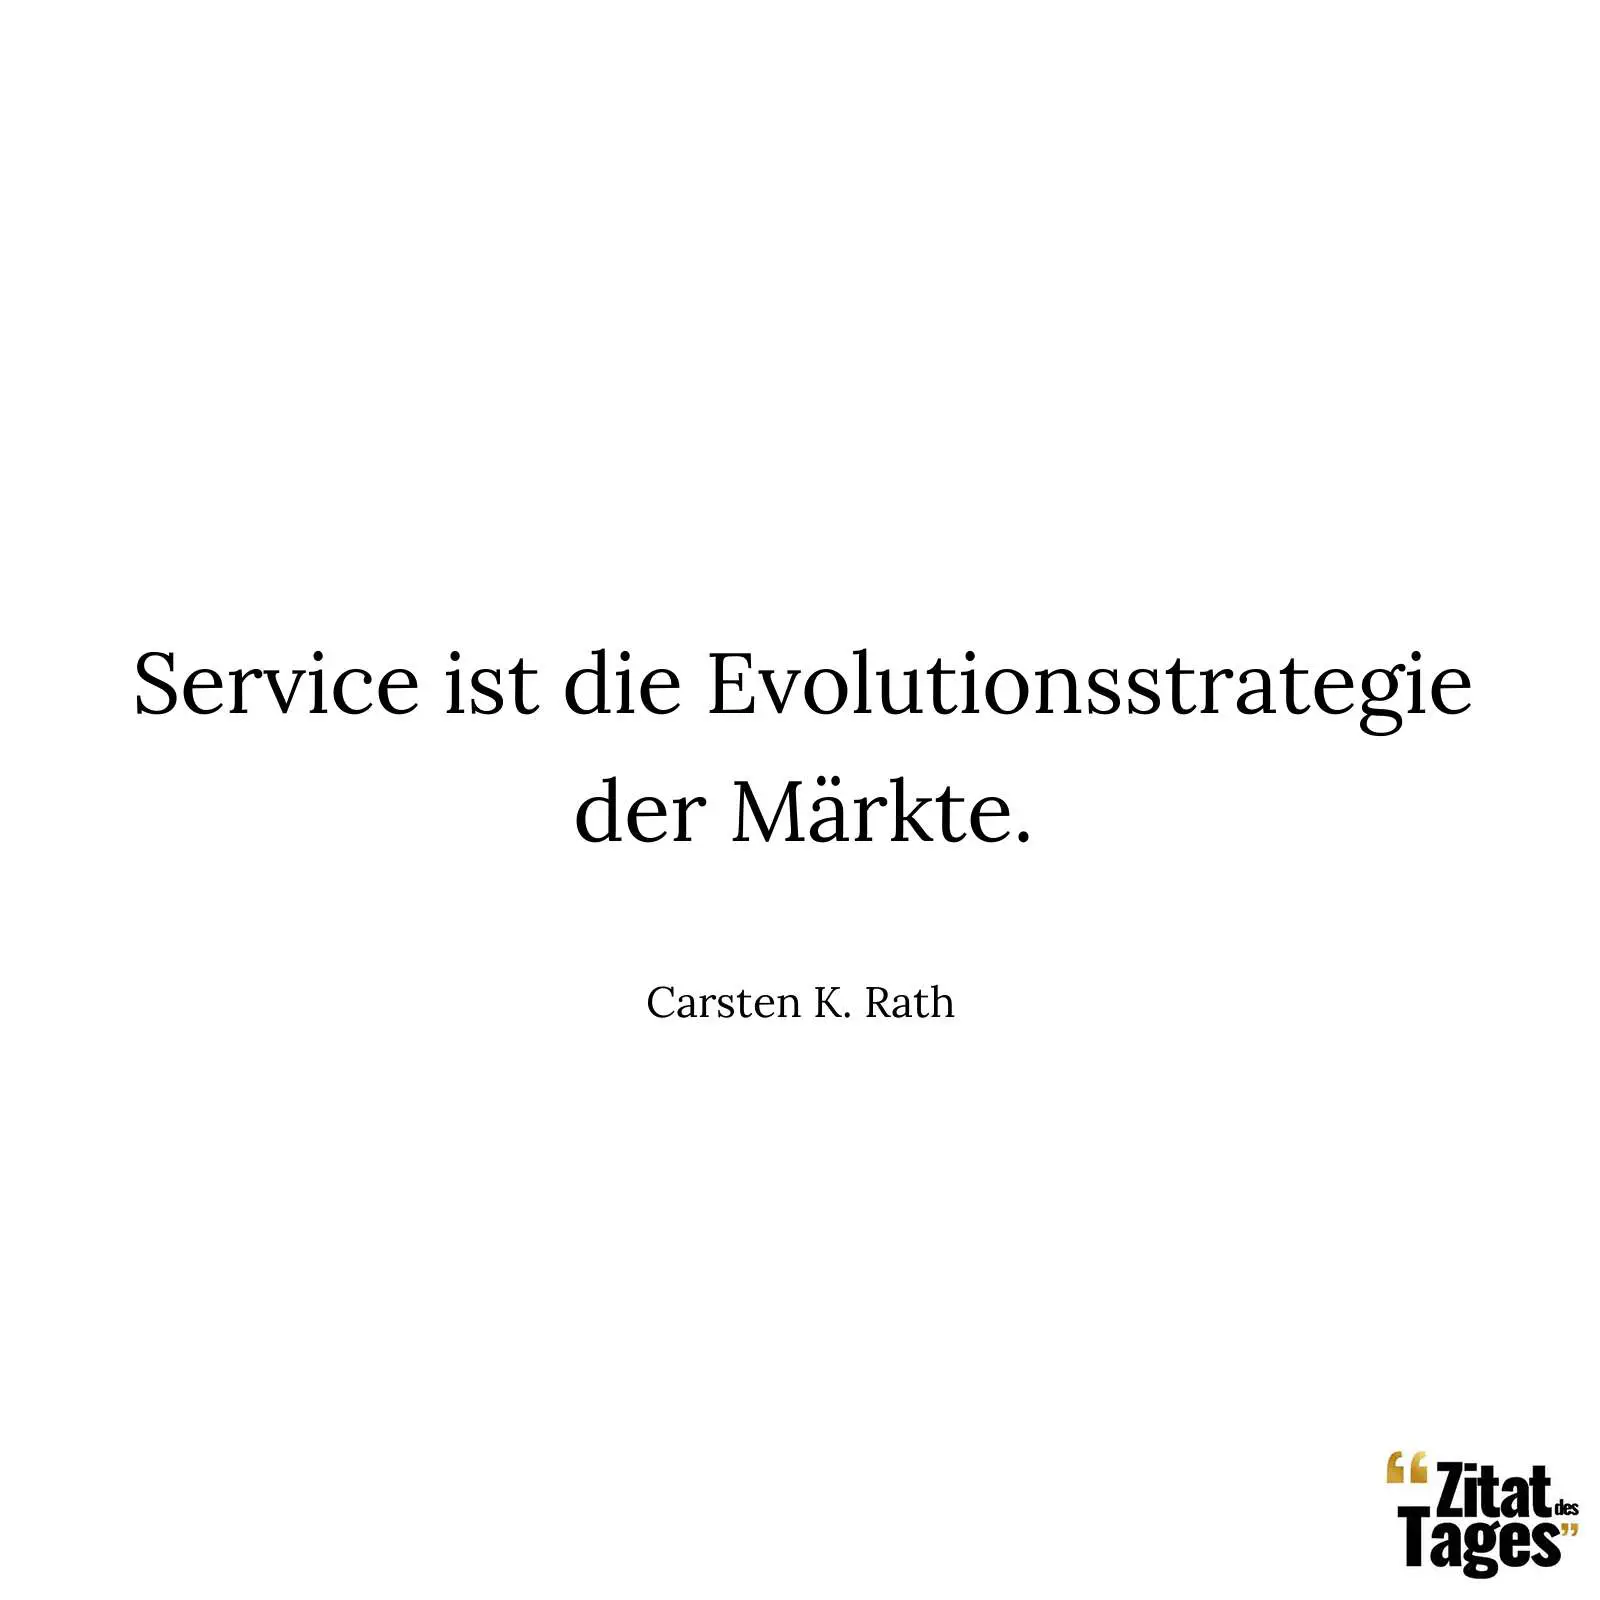 Service ist die Evolutionsstrategie der Märkte. - Carsten K. Rath